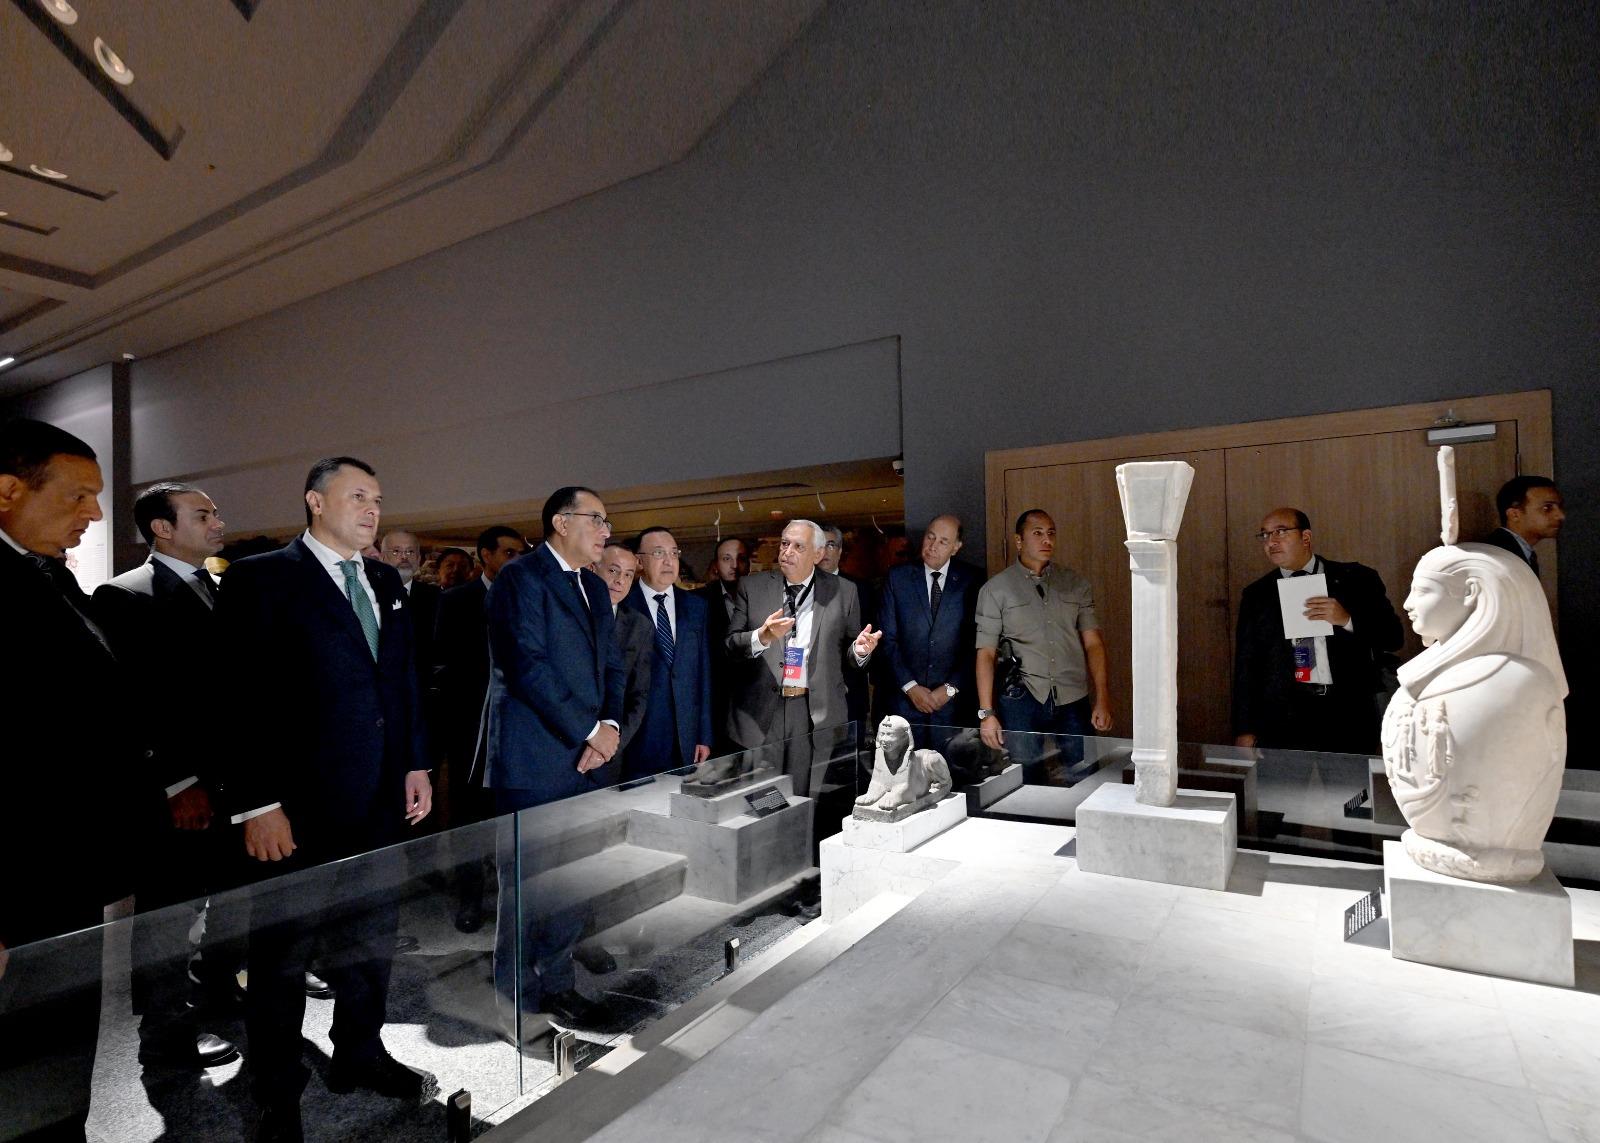 لقطات من افتتاح رئيس مجلس الوزراء للمتحف اليوناني الروماني بالإسكندرية